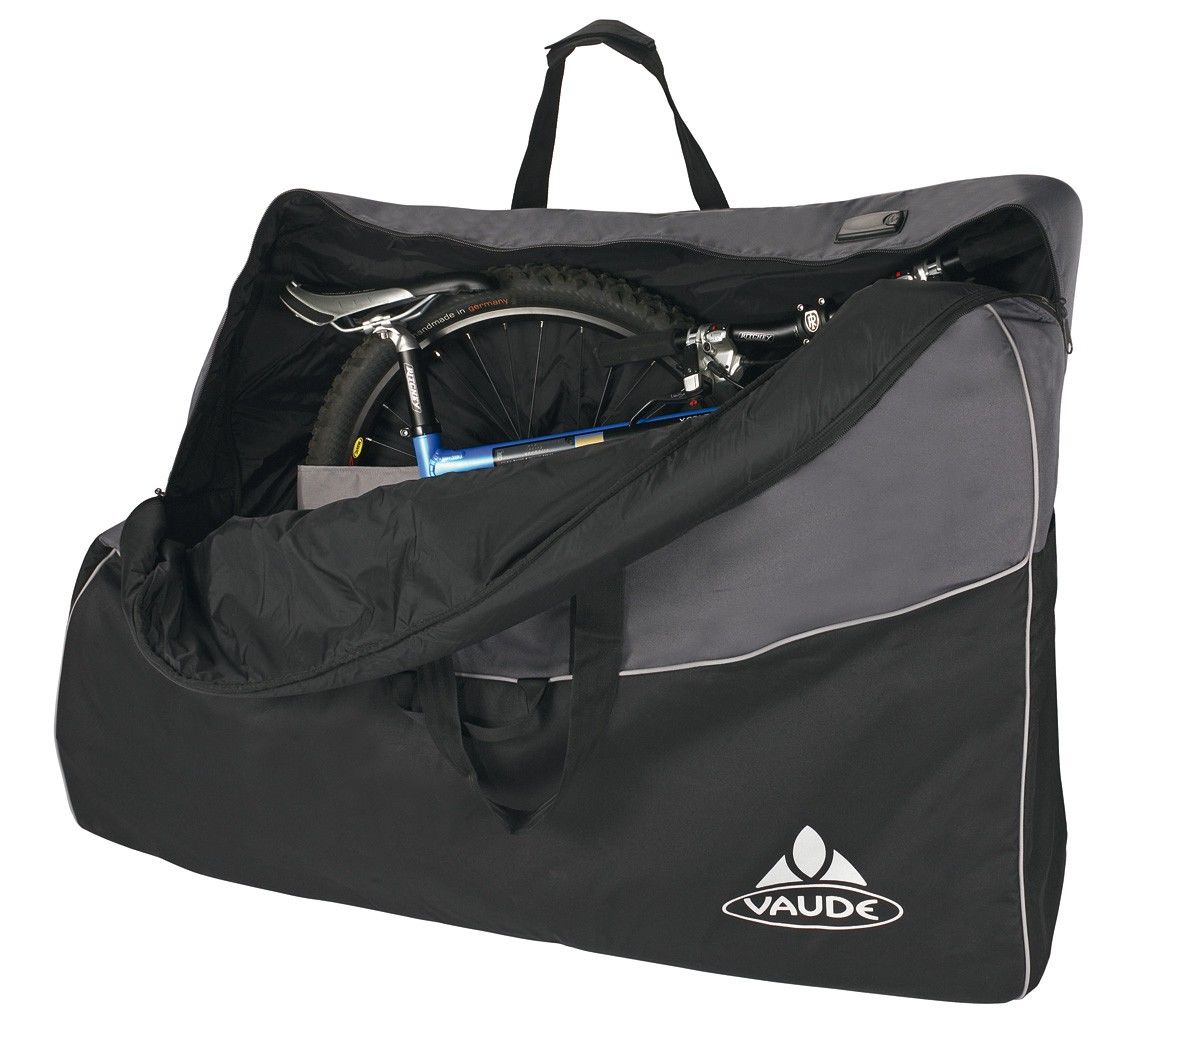 Vaude Big Bike Bag Grau - Schwarz- Fahrradtaschen- Grsse One Size - Farbe Black - Anthracite unter Vaude